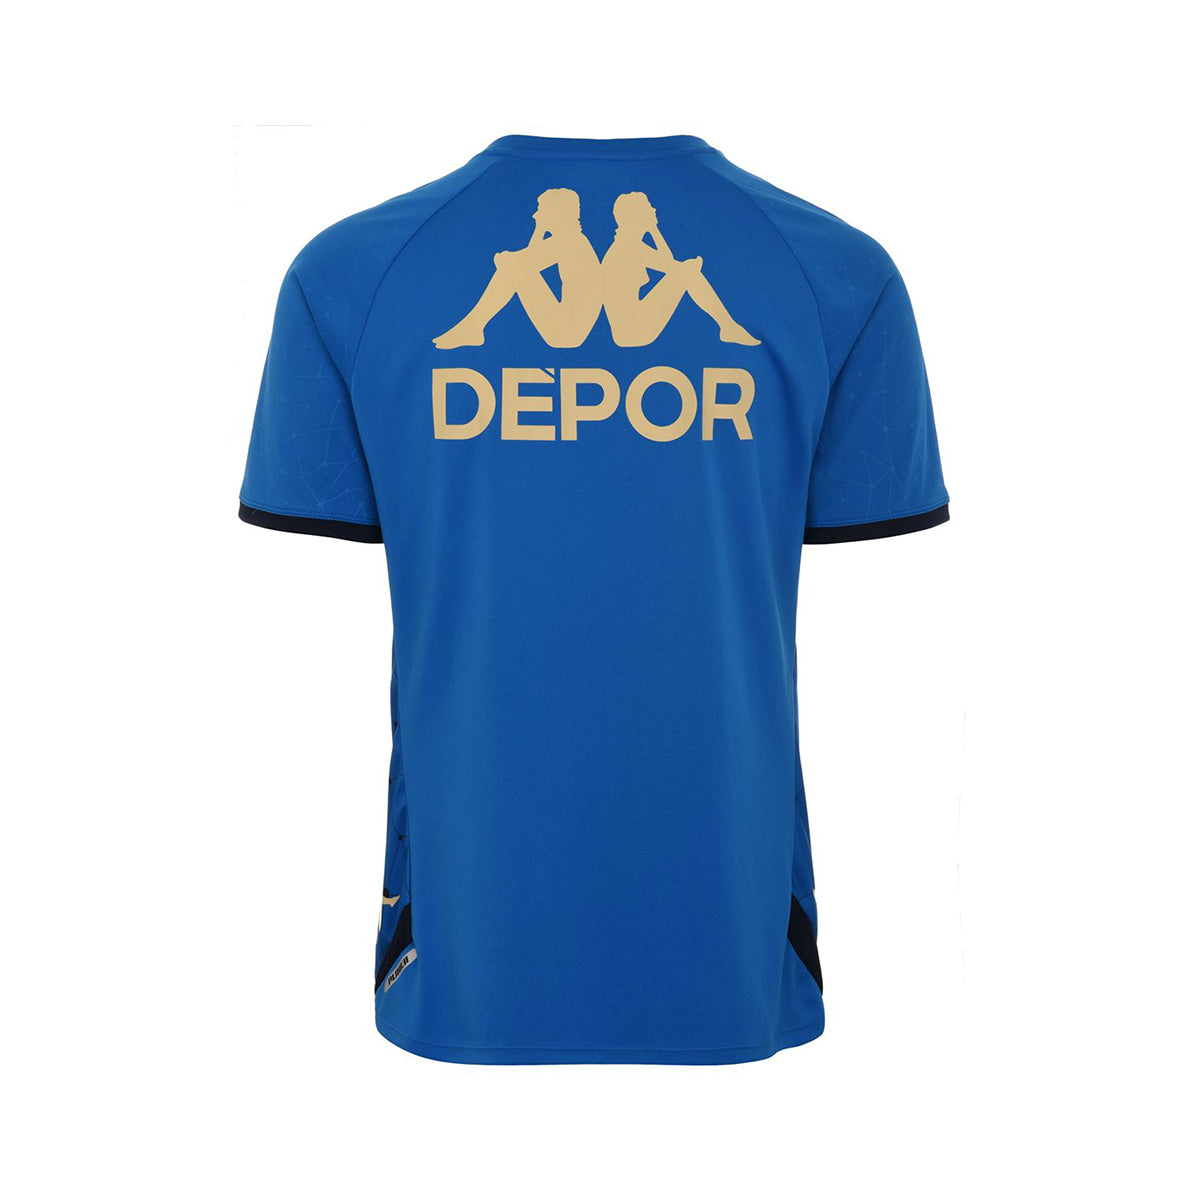 Camiseta adulto Deportivo Coruña azul marino con escudo blanco Kappa